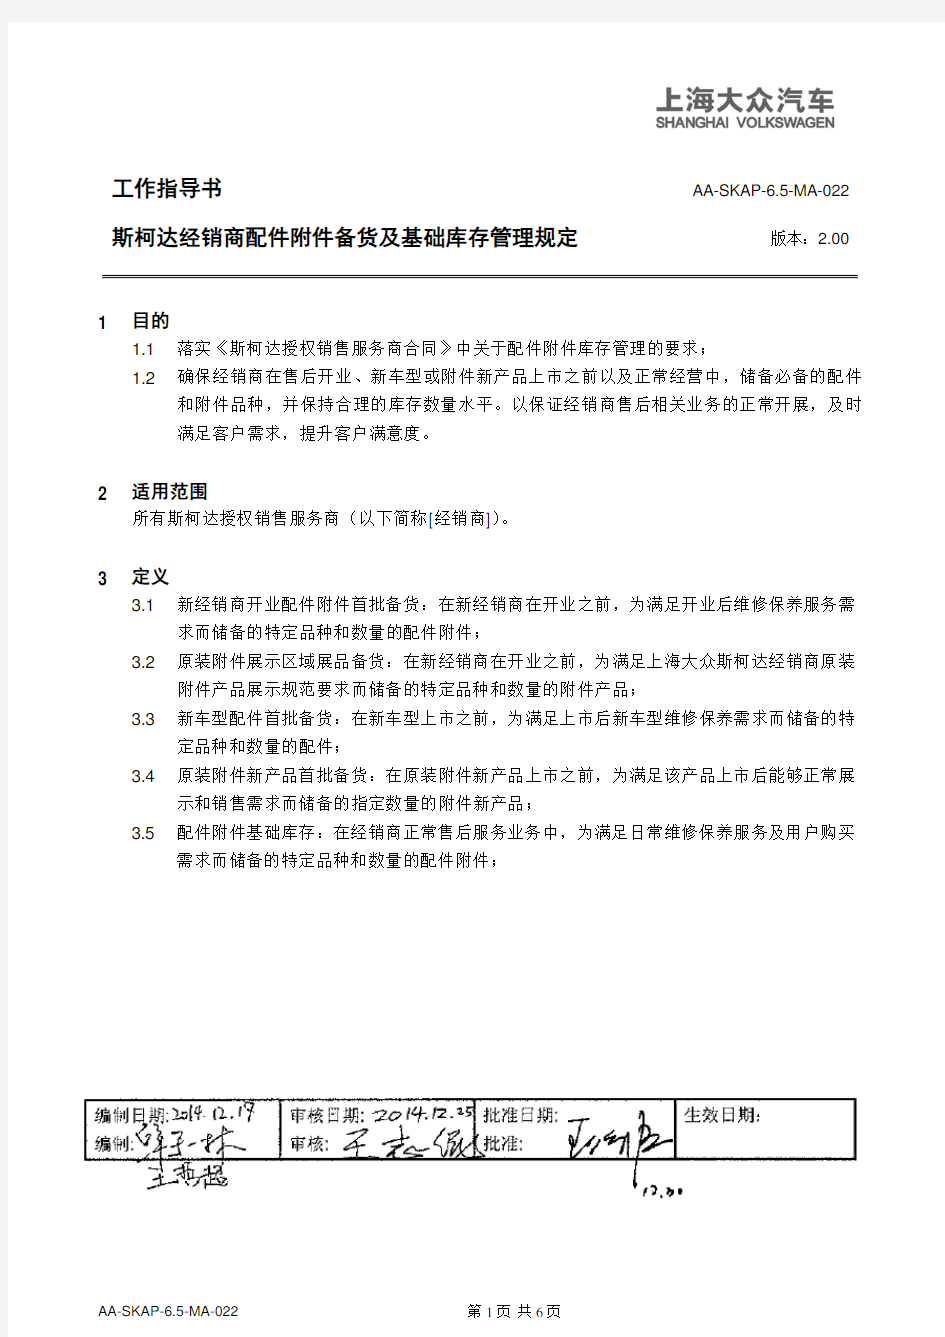 10124_上海大众汽车斯柯达品牌经销商配件附件备货及基础库存管理规定-2015